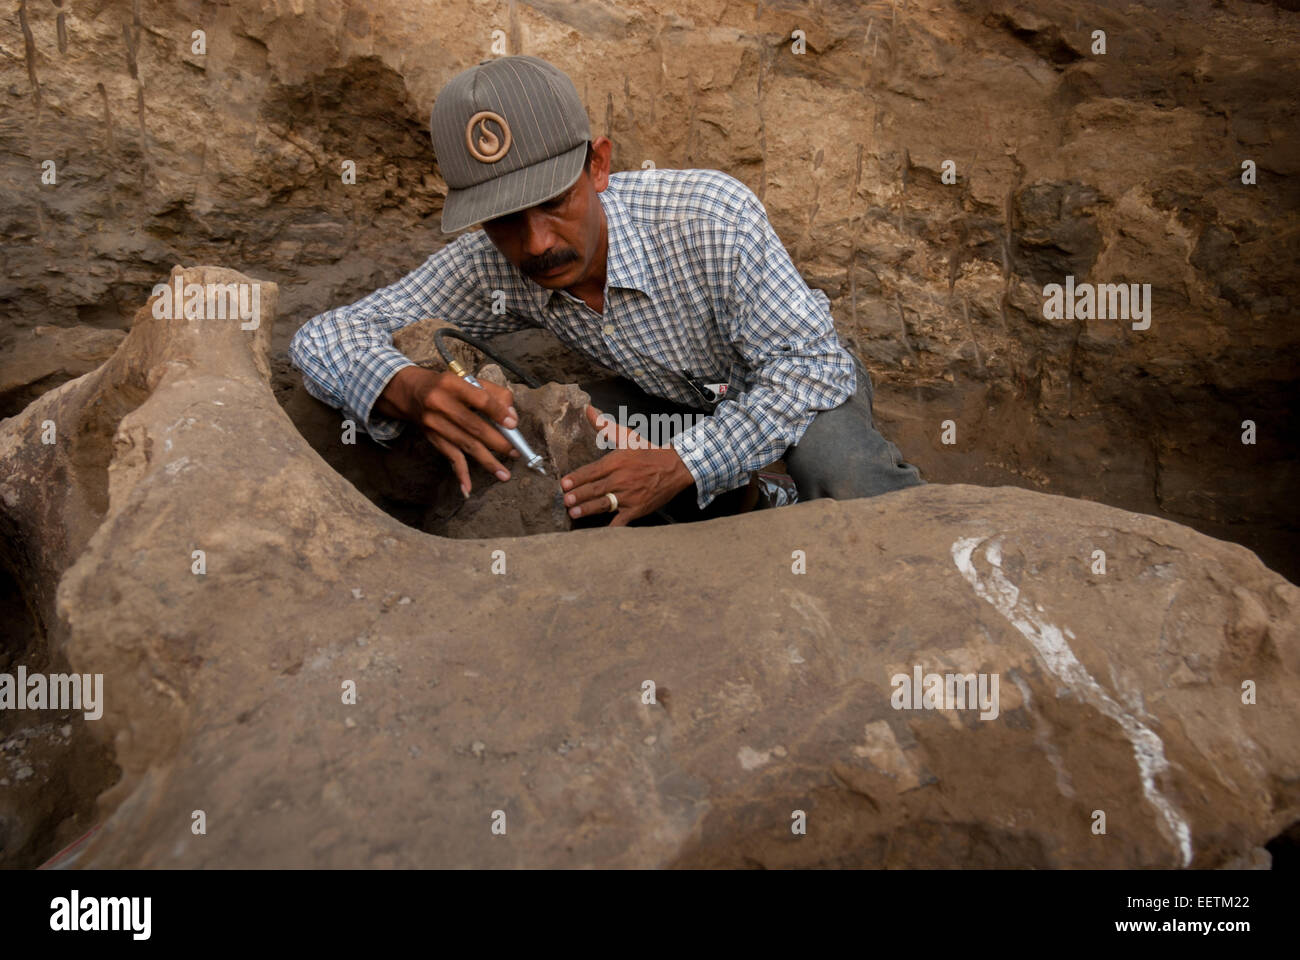 El paleontólogo Iwan Kurniawan está trabajando en la excavación de huesos fosilizados de Elephas hysudrindicus en Blora, Java Central, Indonesia. Foto de stock